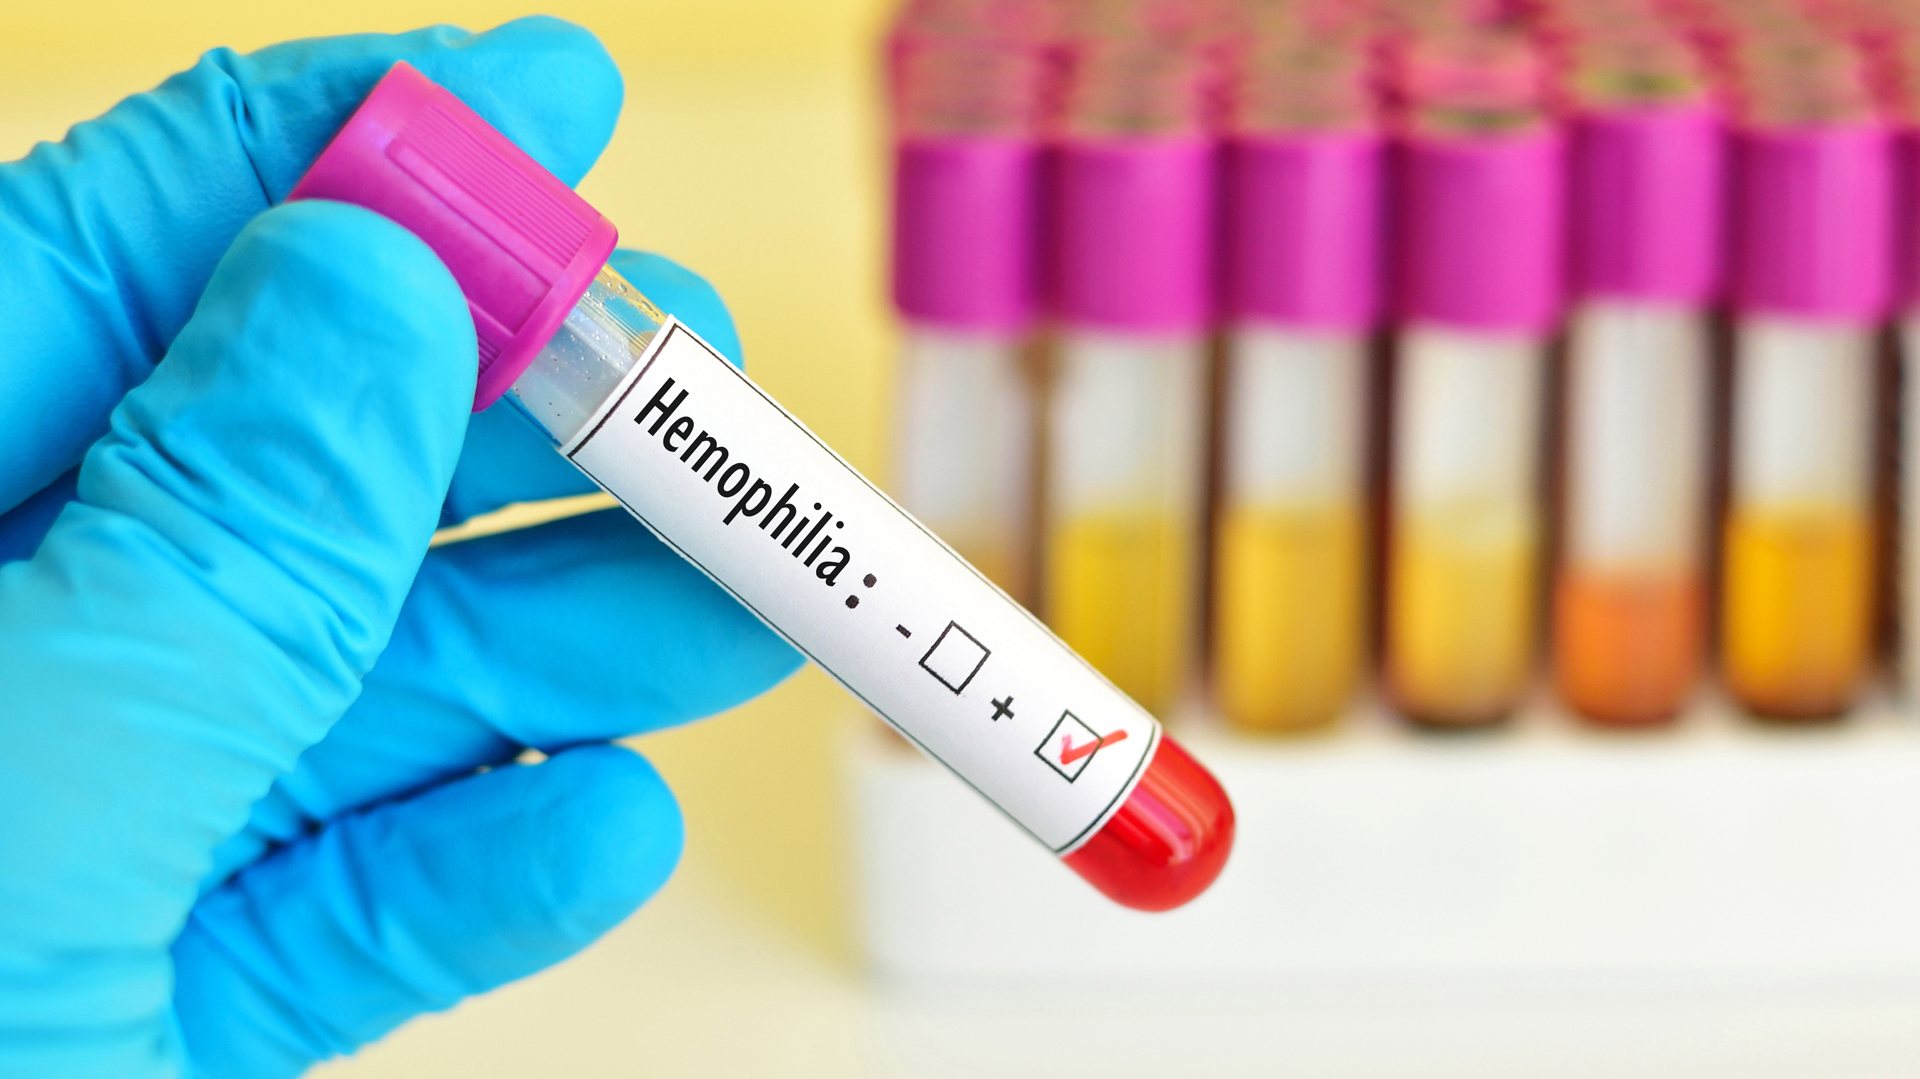 La Importancia De Adherir A Los Tratamientos Para Desarrollar Una Vida Plena Hemofilia Latam 9126